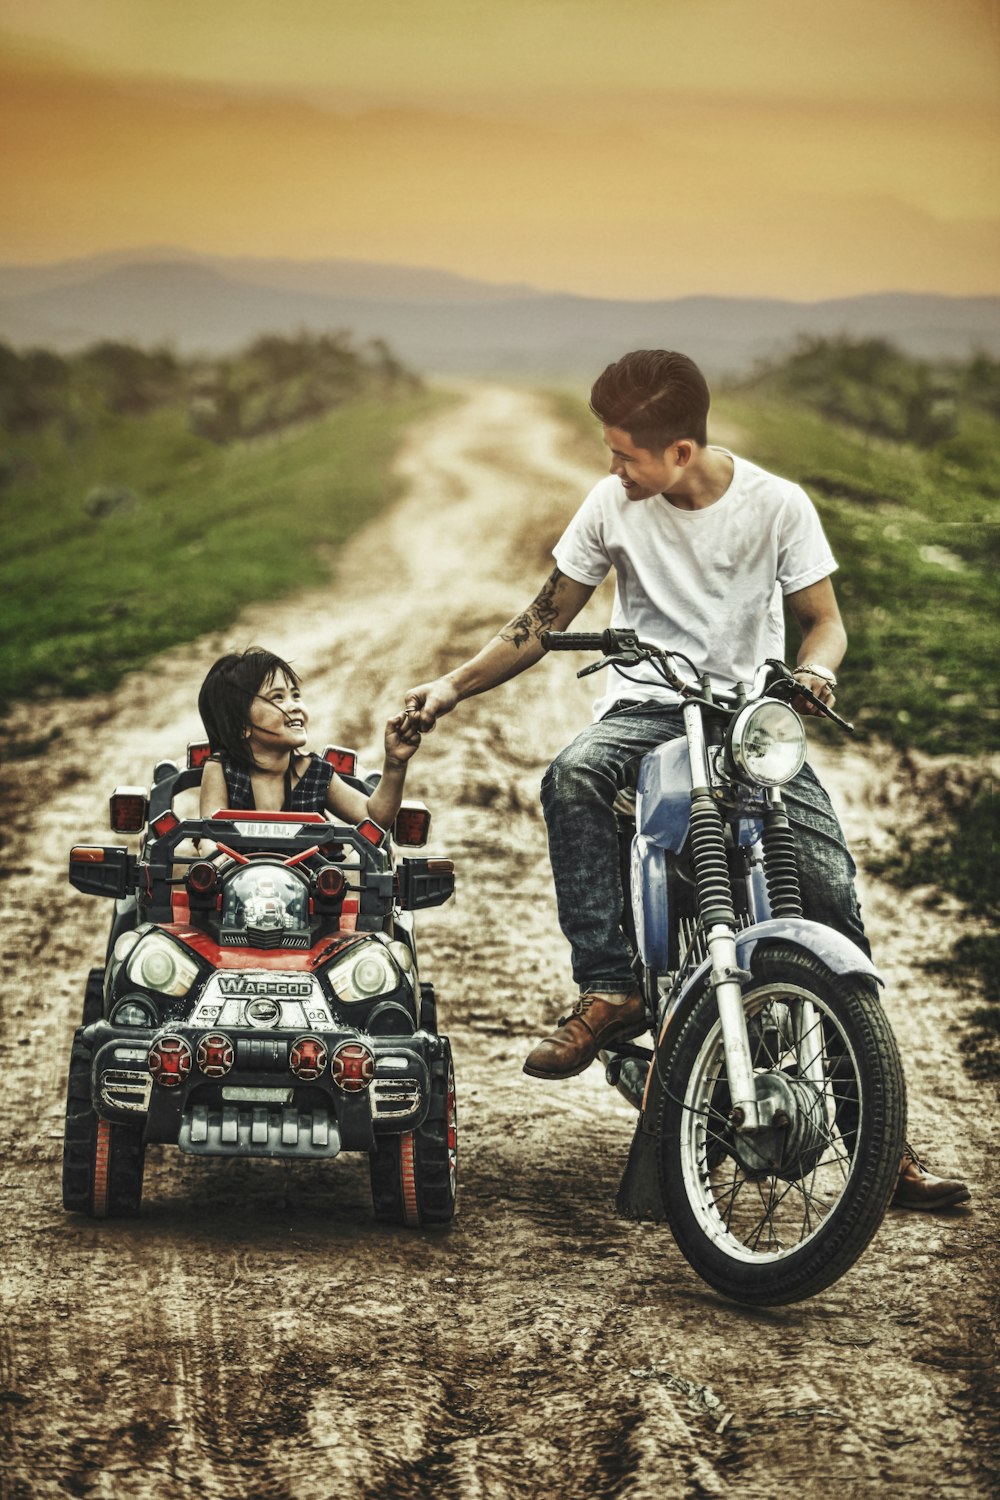 uomo che guida la moto e il bambino su una macchinina giocattolo in una strada durante il giorno